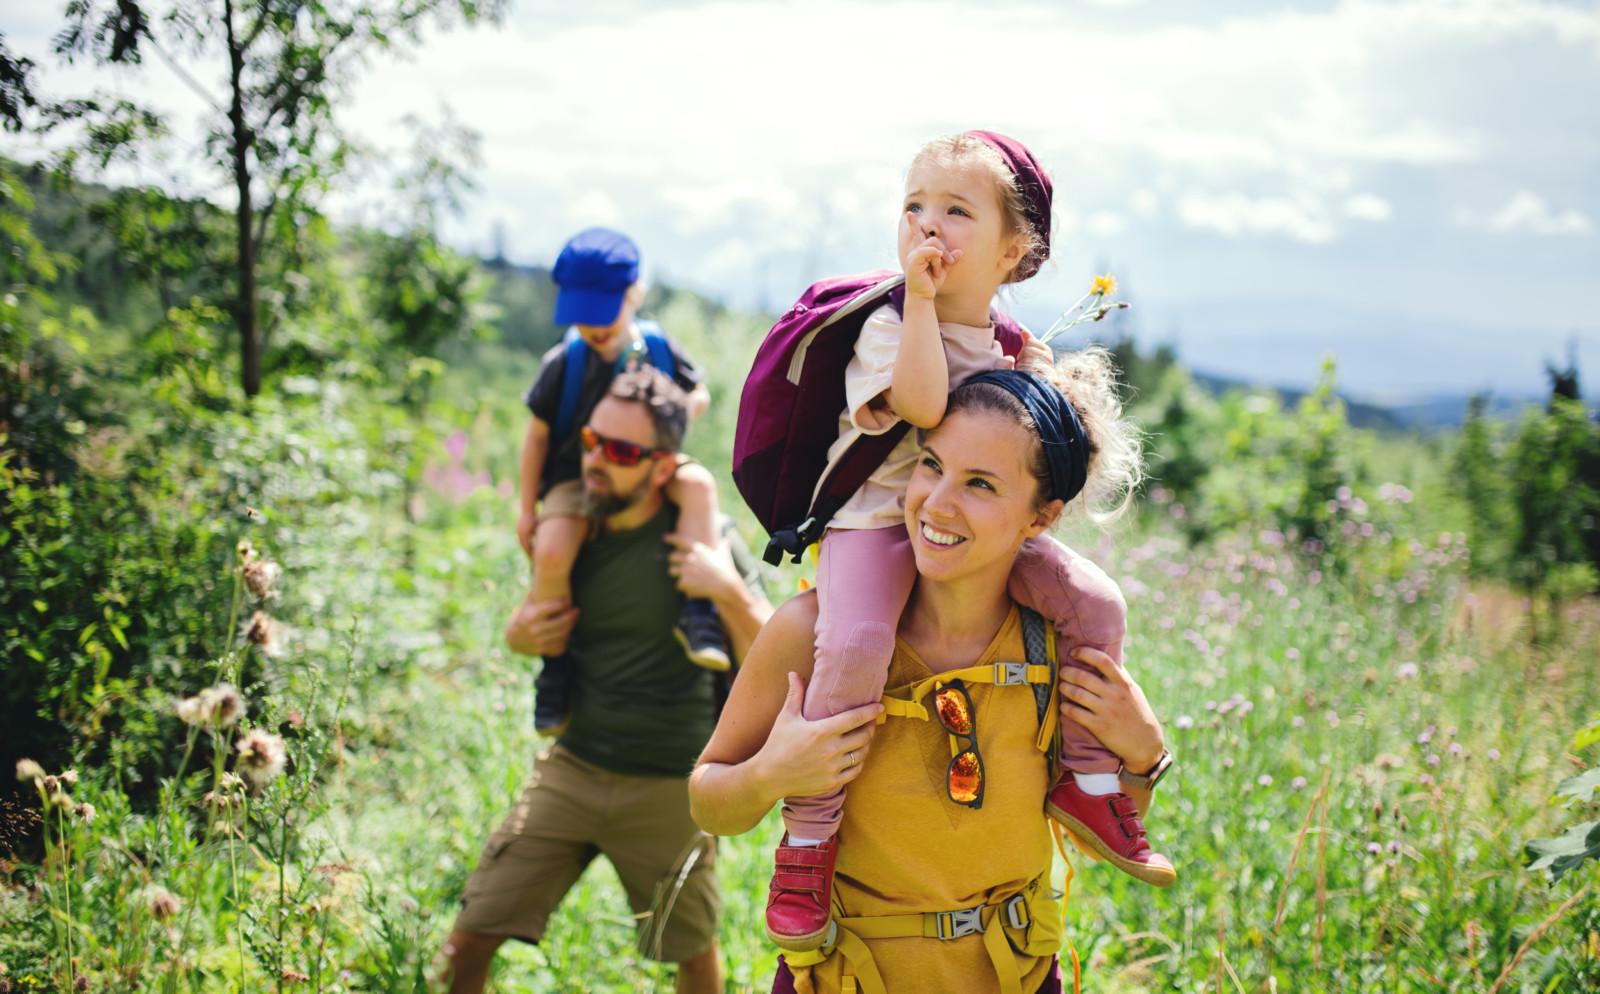 Mies kantaa olkapäillään pientä poikaa ja nainen pientä tyttöä. He ovat retkeilemässä kesäisessä luonnossa.